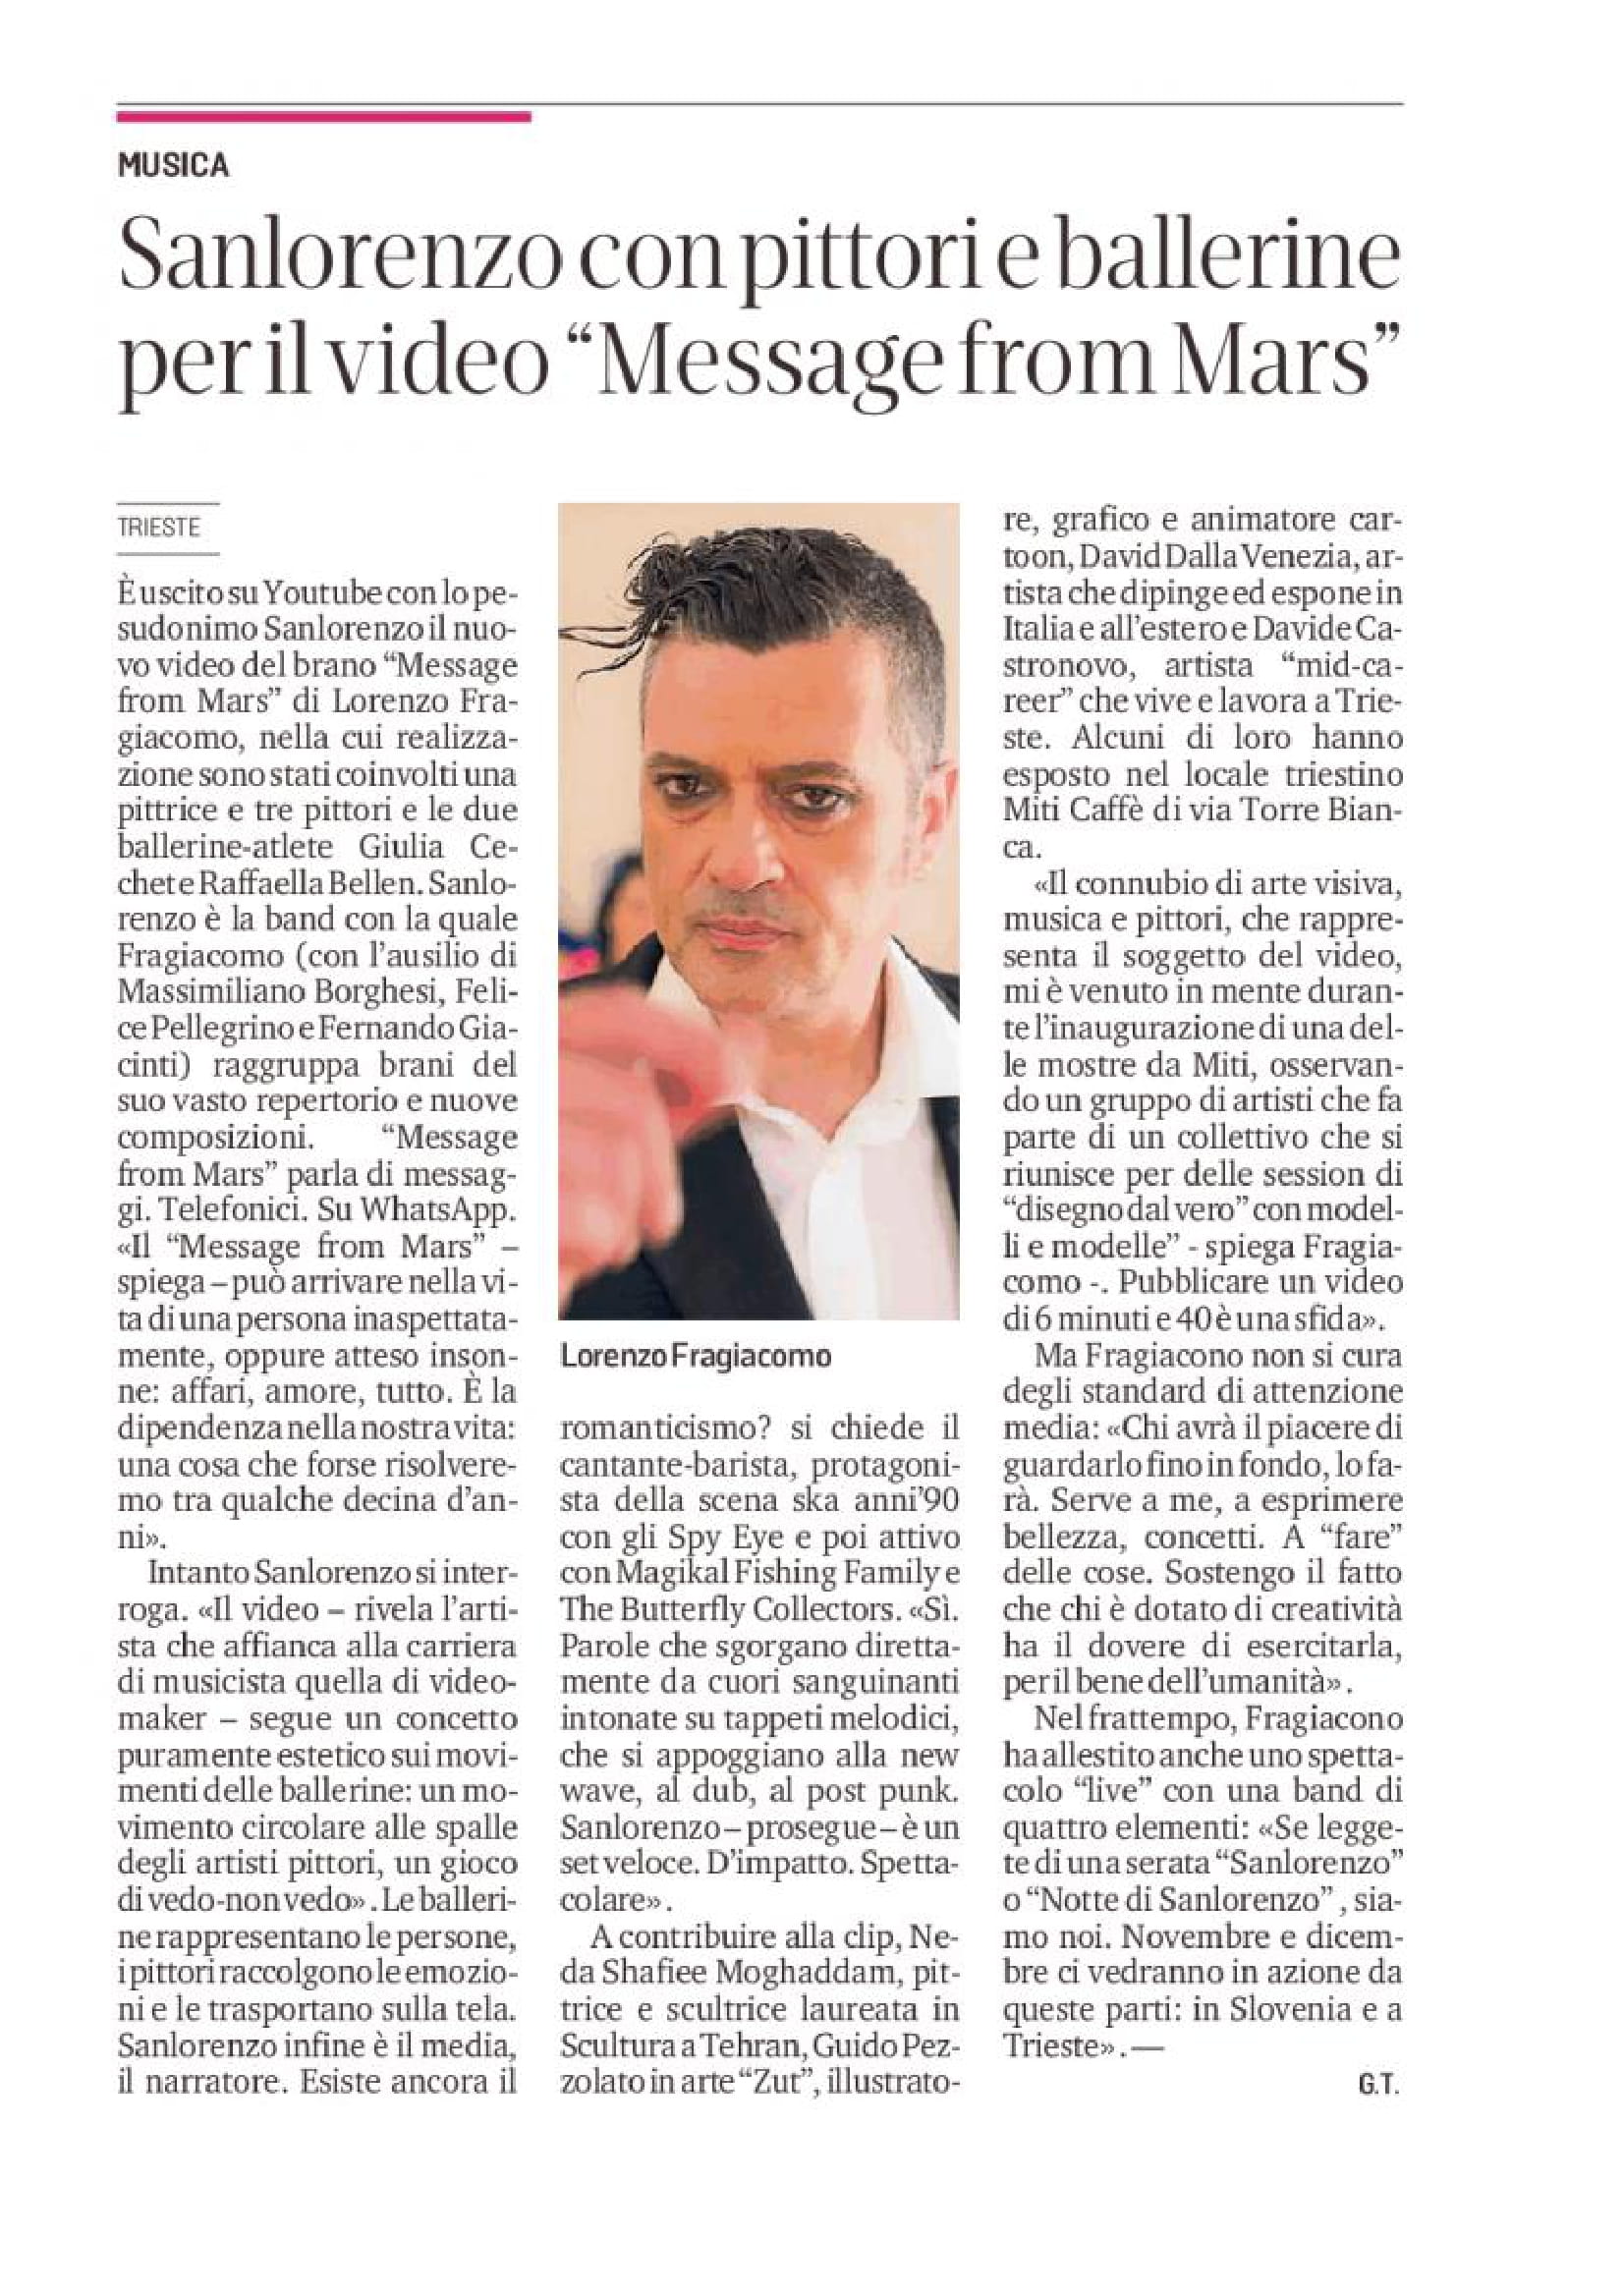 Articolo giornalistico sull'uscita del video musicale Message from Mars di SanLorenzo 